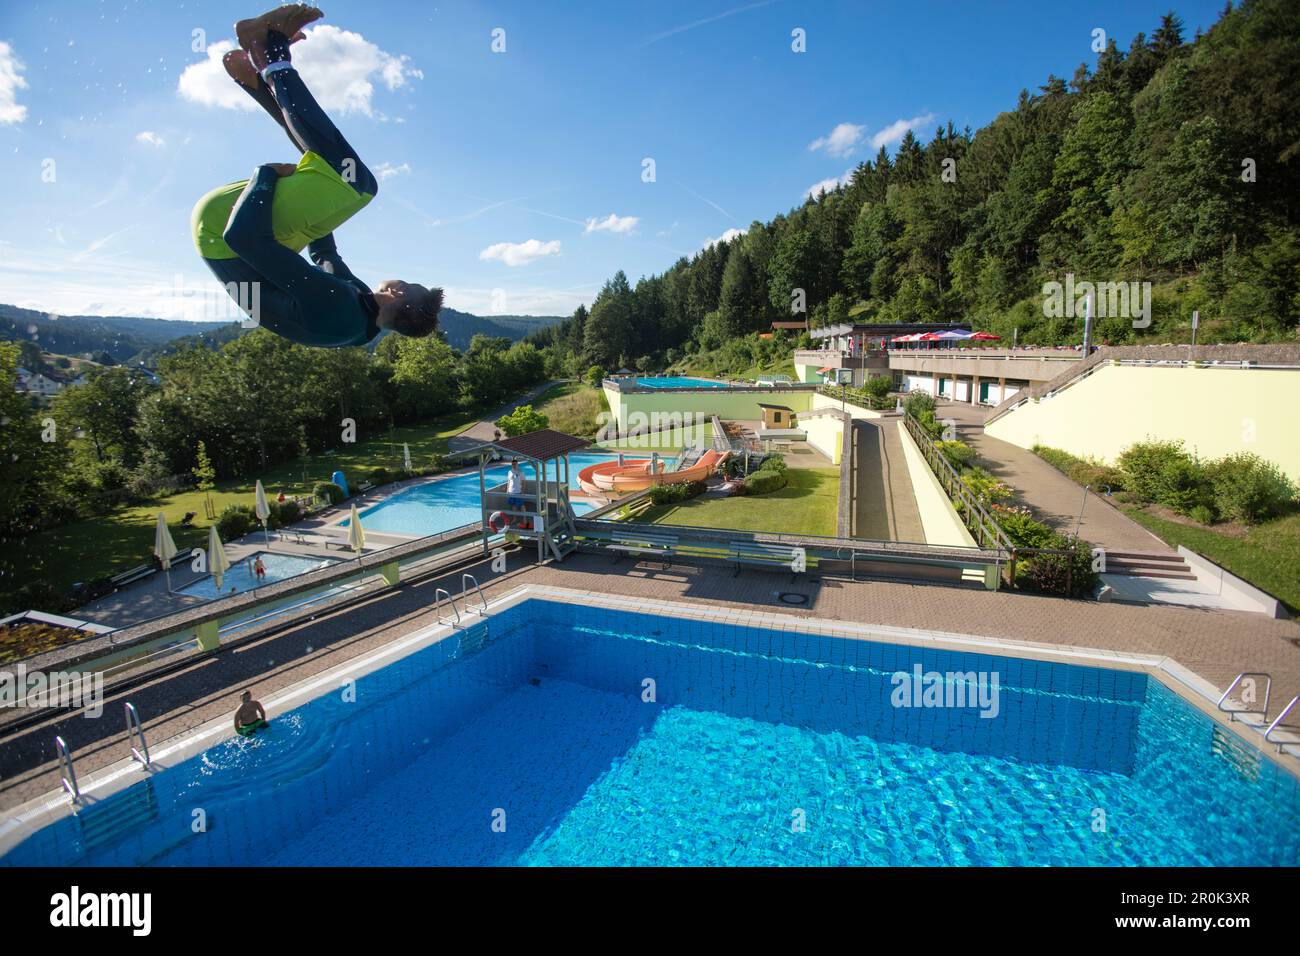 Un jeune homme saute de 5 mètres de tour de plongée dans la piscine à Freibad Terrassenbad Frammersbach, Frammersbach, Spessart-Mainland, Bavière, Allemagne Banque D'Images